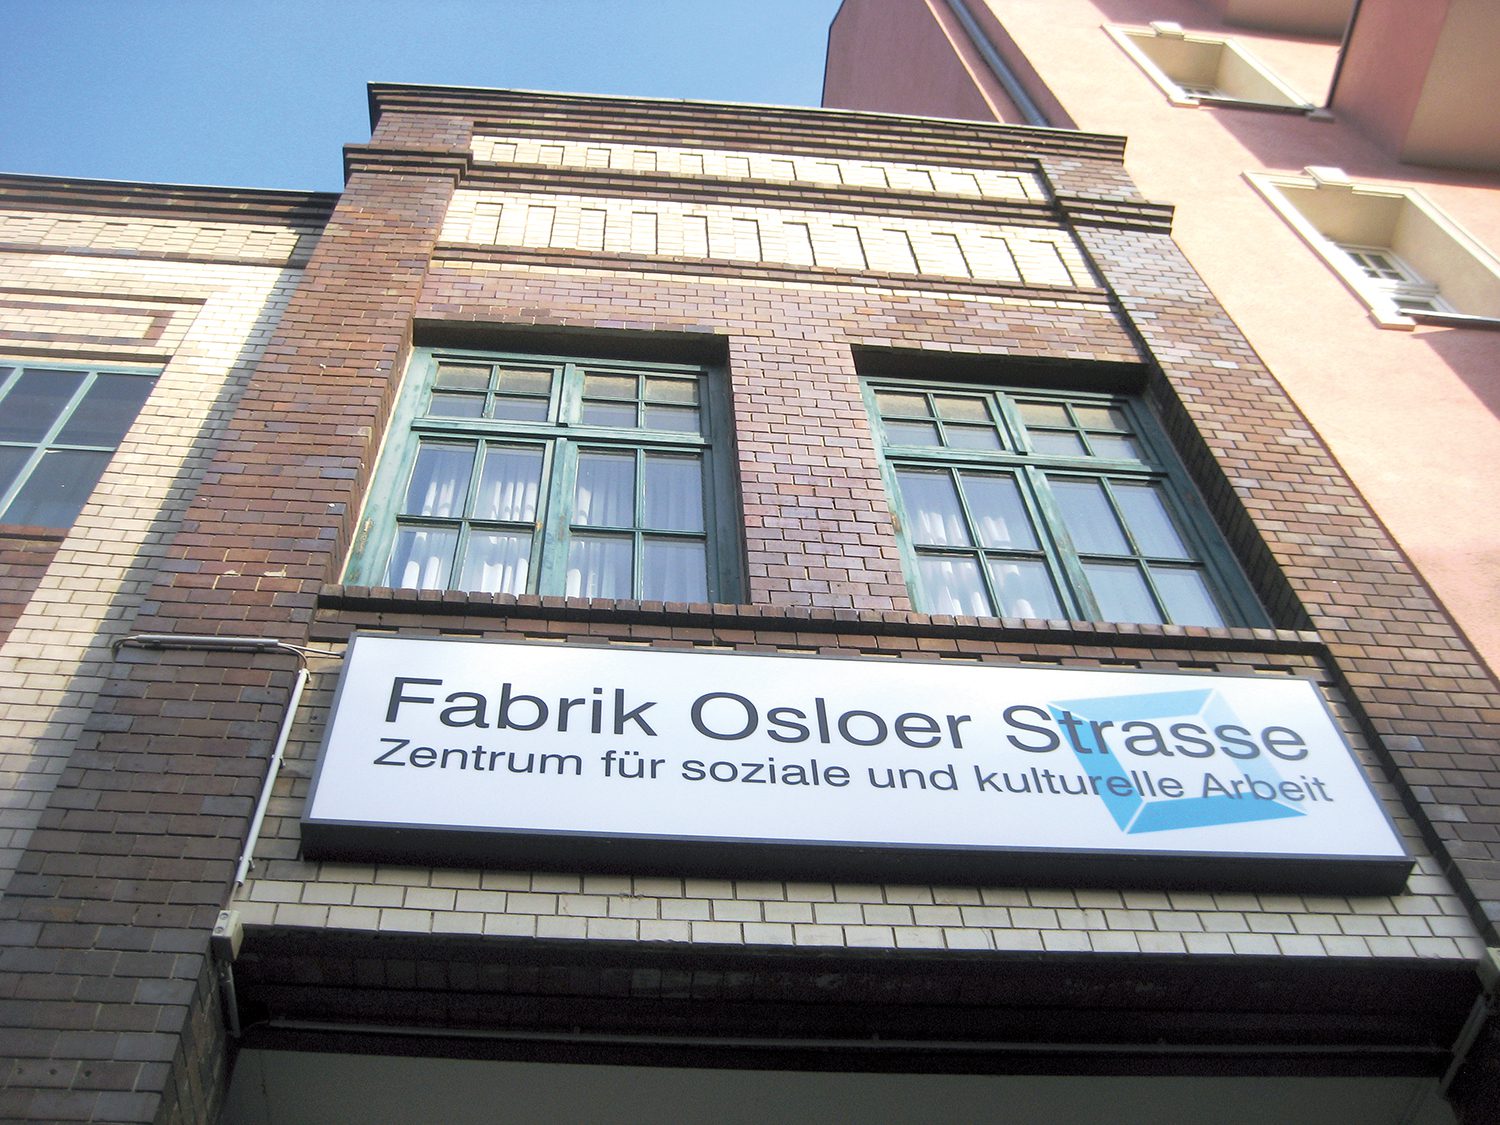 Eingang zur Fabrik Osloer Straße. Foto: Hensel